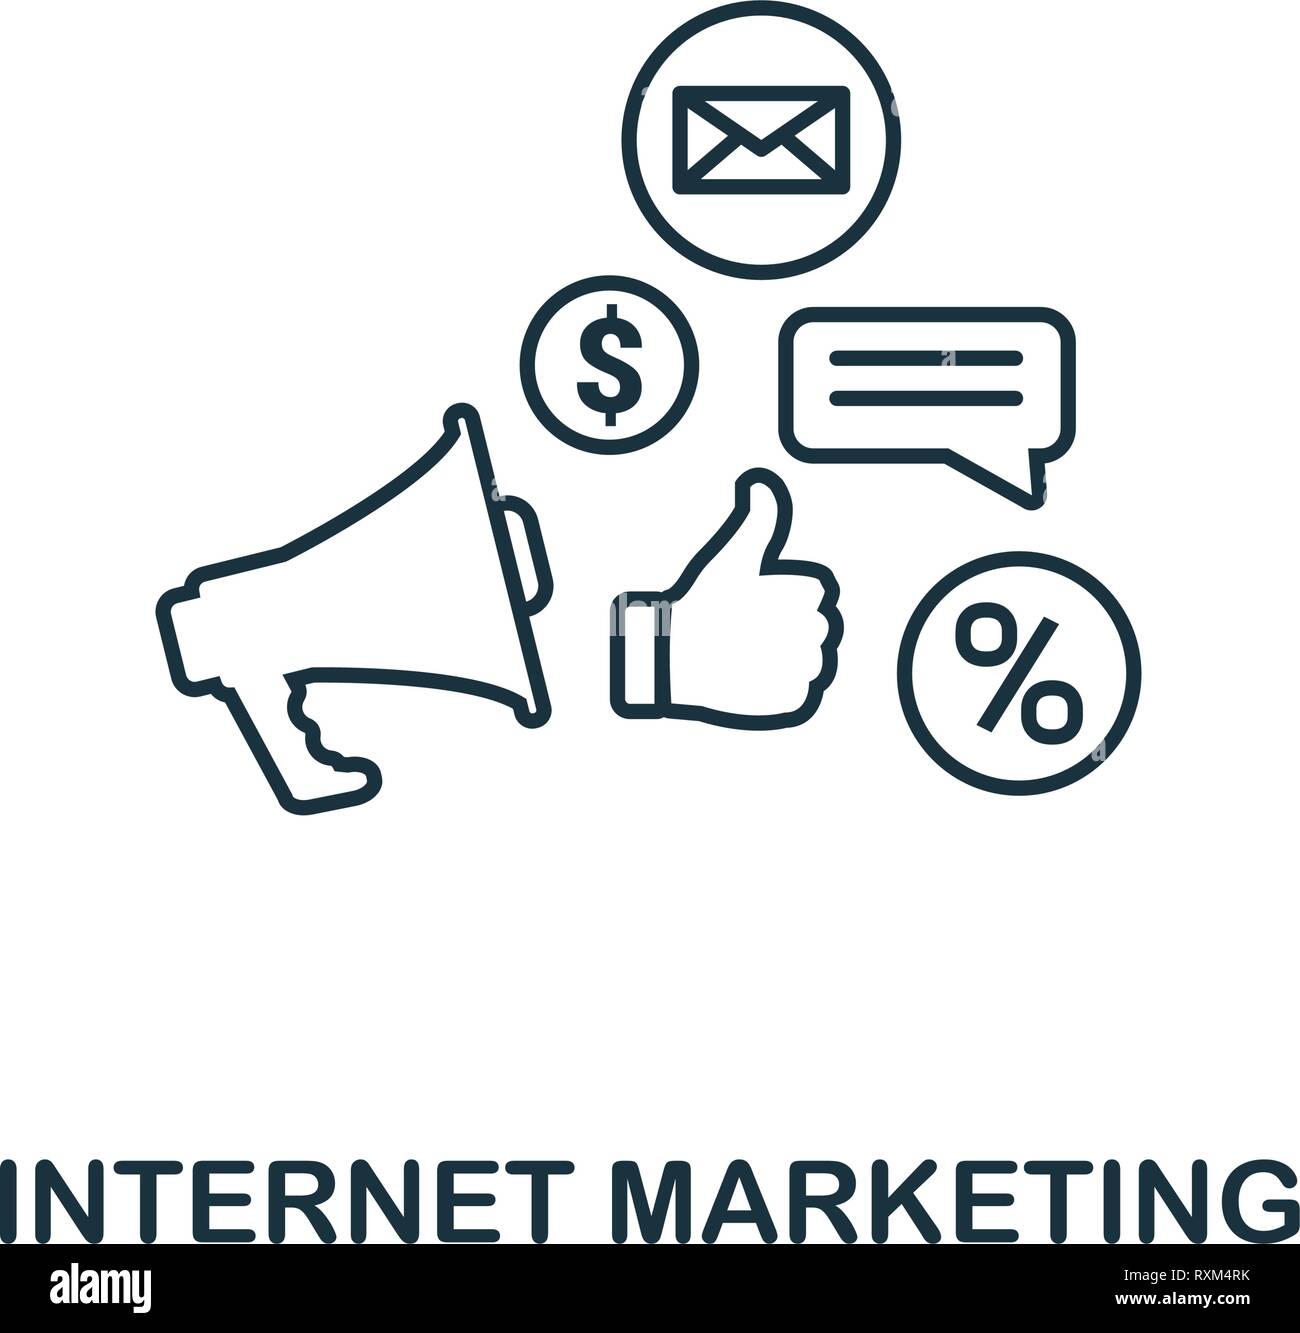 Internet Marketing icono estilo de línea fina. Símbolo del marketing online colección de iconos. Esquema icono de marketing en internet para el diseño web, aplicaciones, software Ilustración del Vector